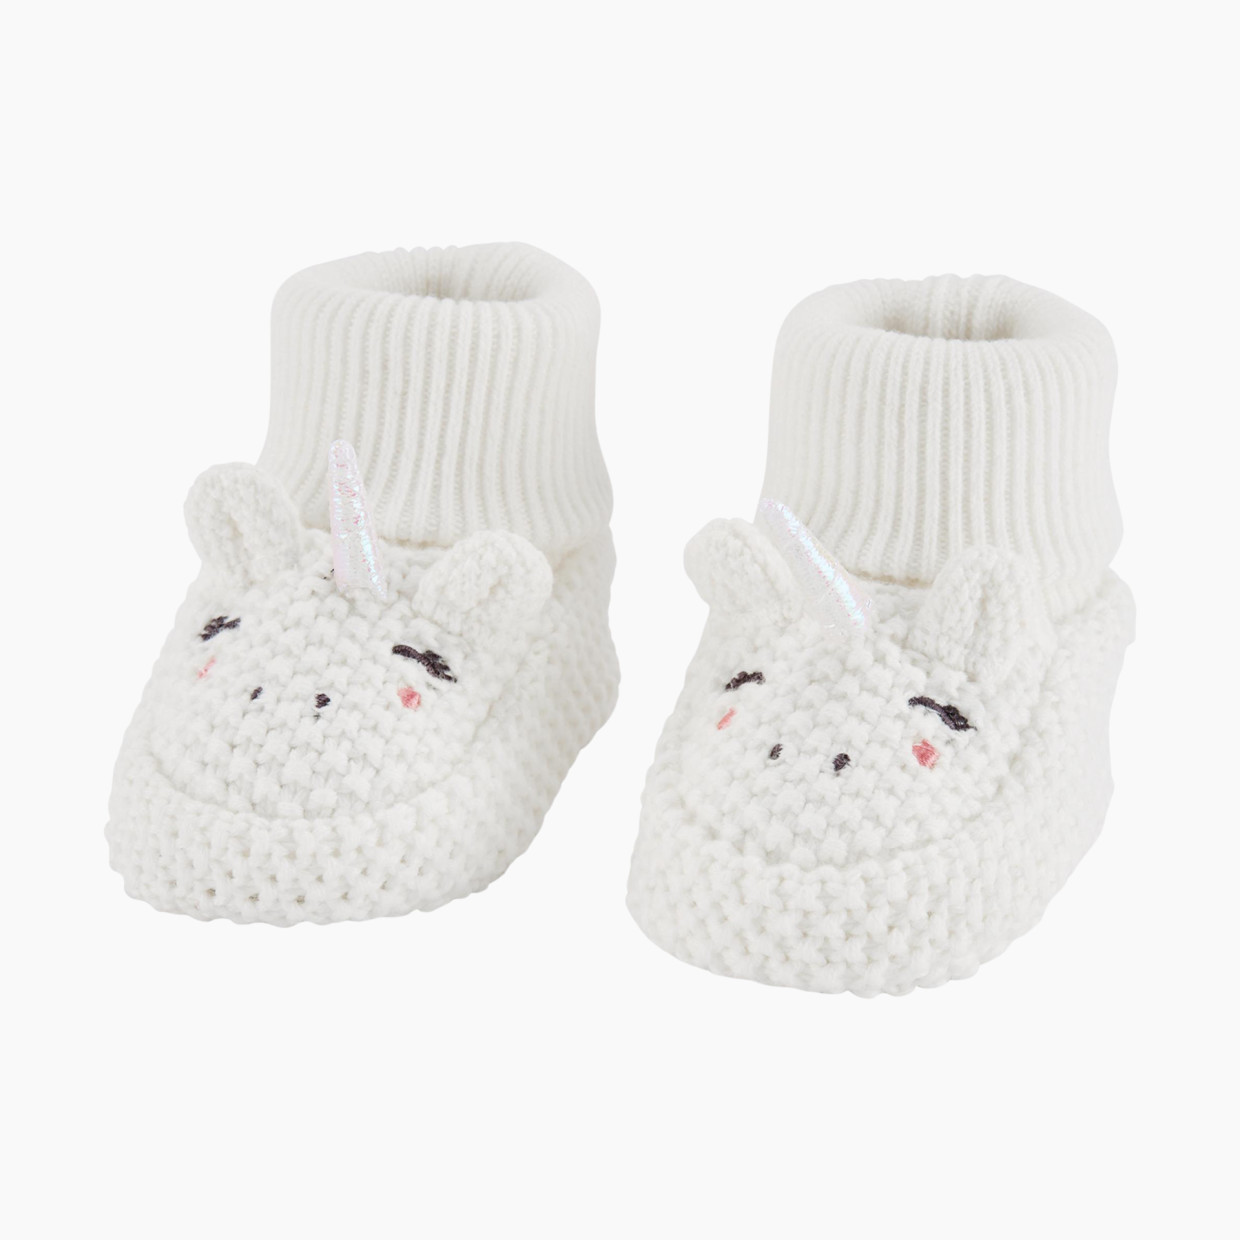 Carter's Crochet Booties - White Unicorns, Newborn.